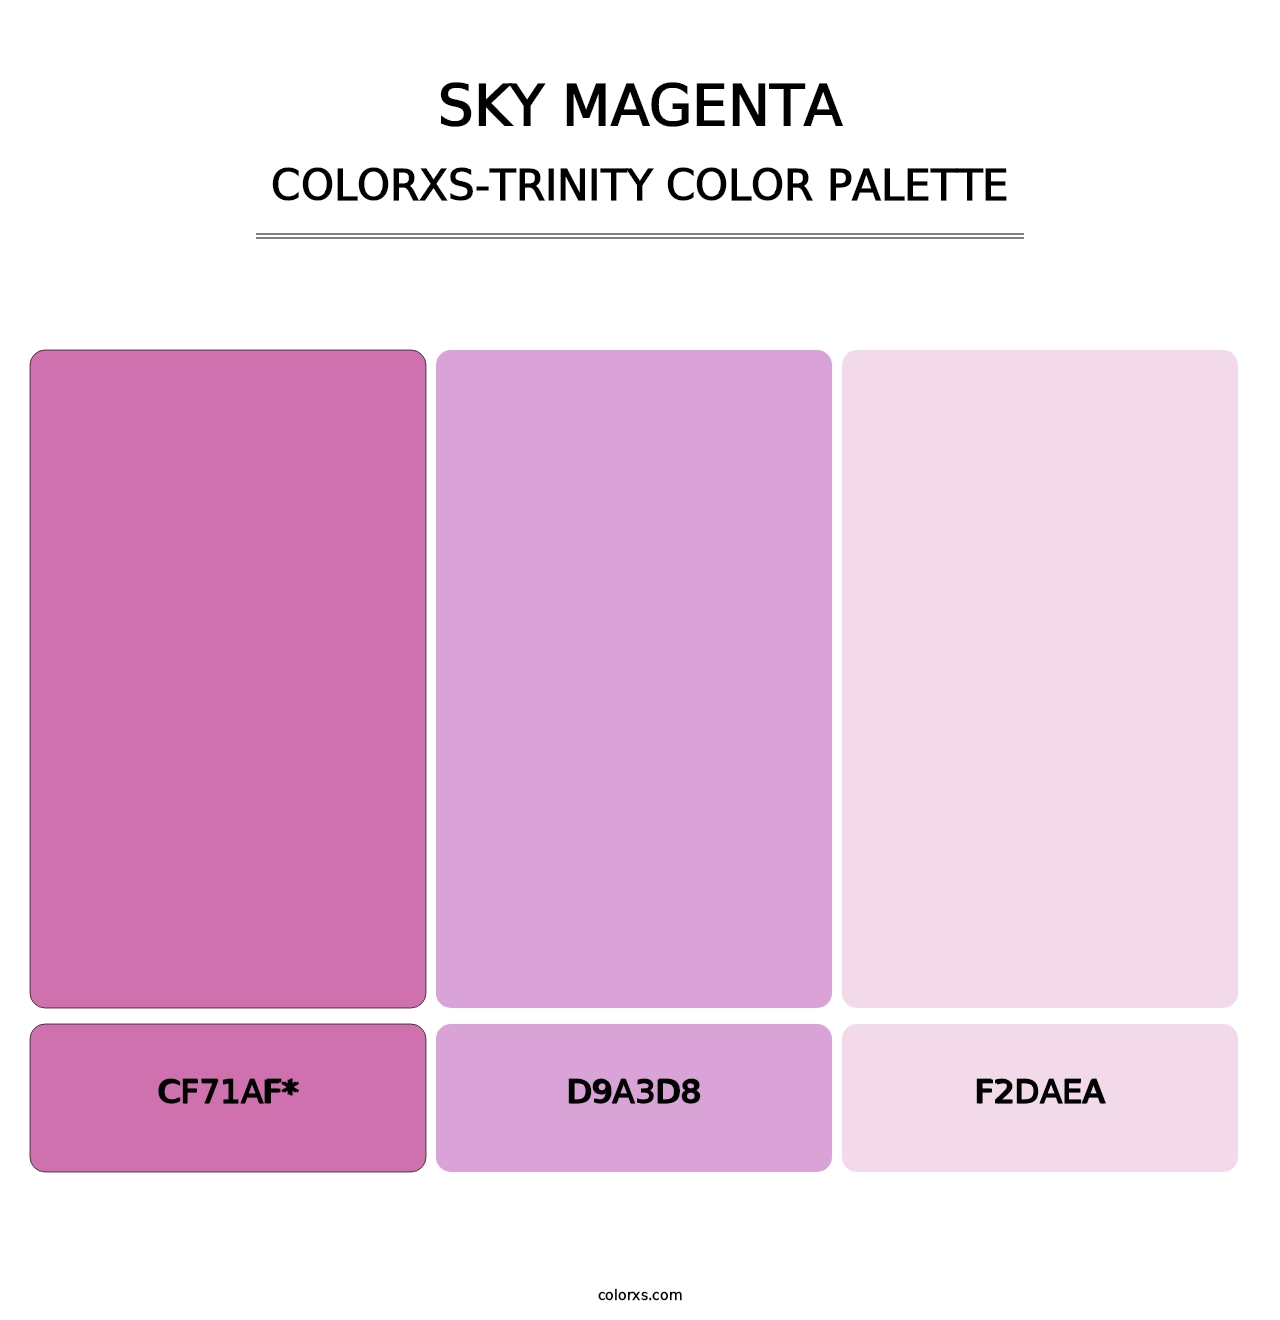 Sky Magenta - Colorxs Trinity Palette